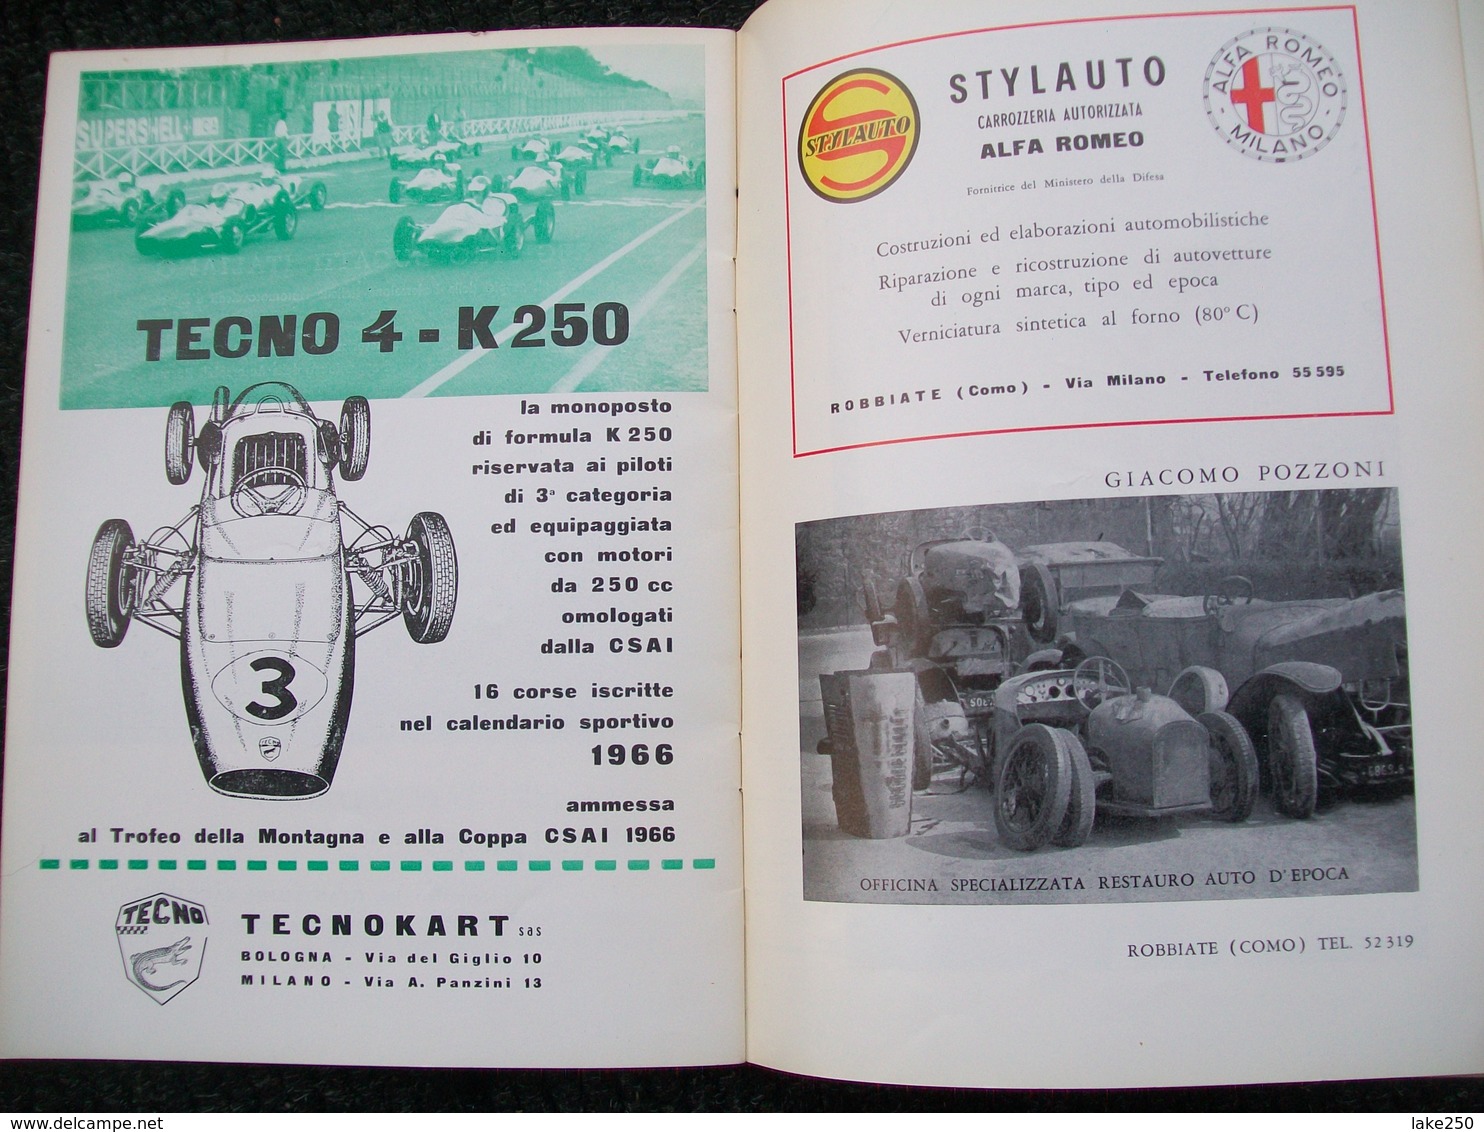 VIII COPPA MONZA Autodromo Nazionale Di Monza 1966 - Motores